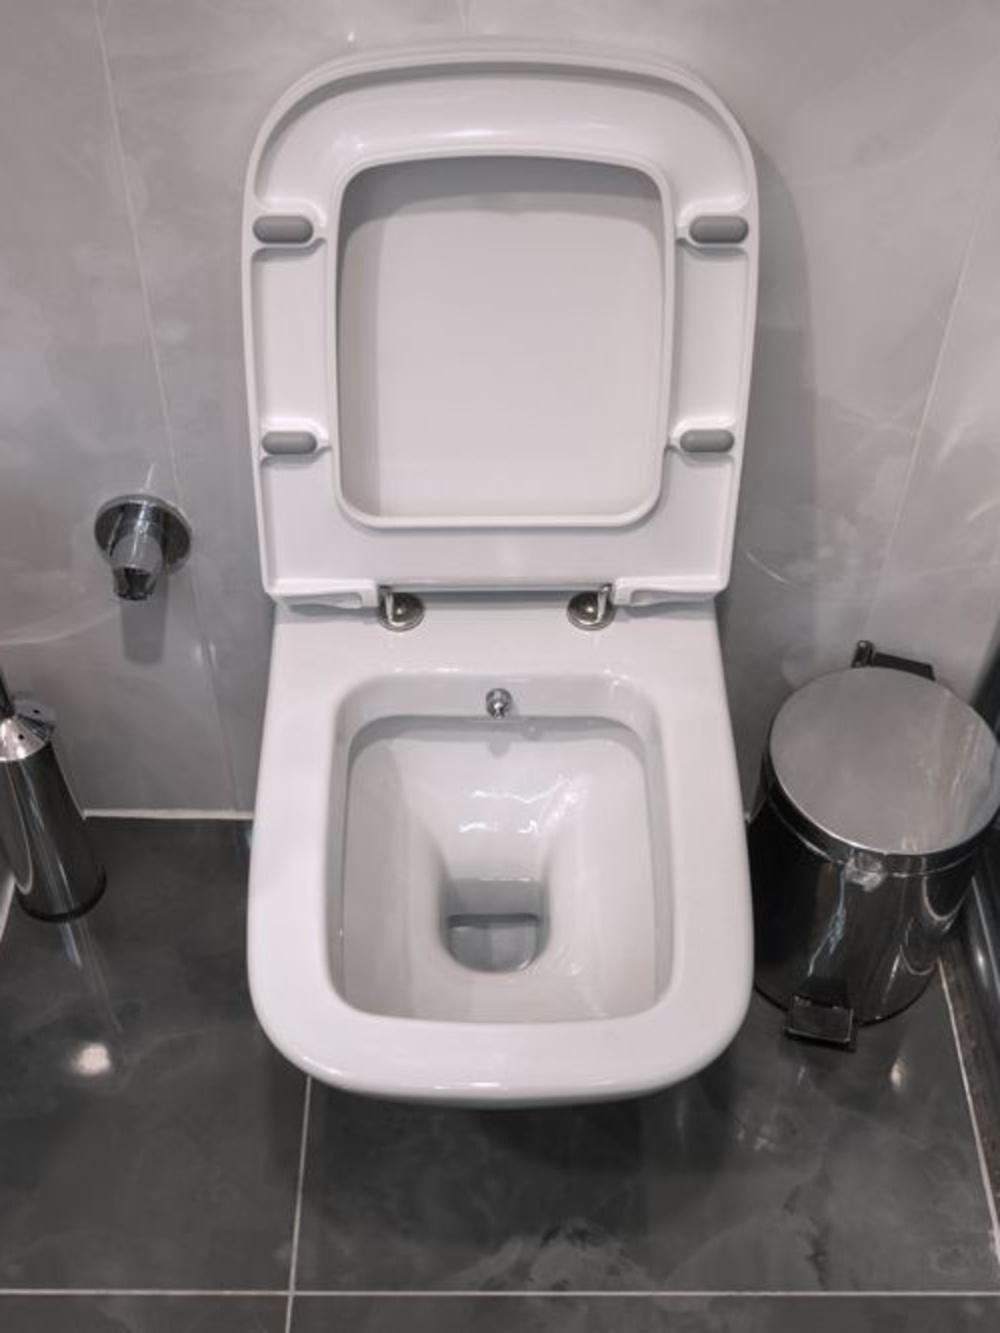 La perspective de vous asseoir sur une lunette de toilettes sur laquelle des inconnus se sont déjà assis vous est insupportable ?